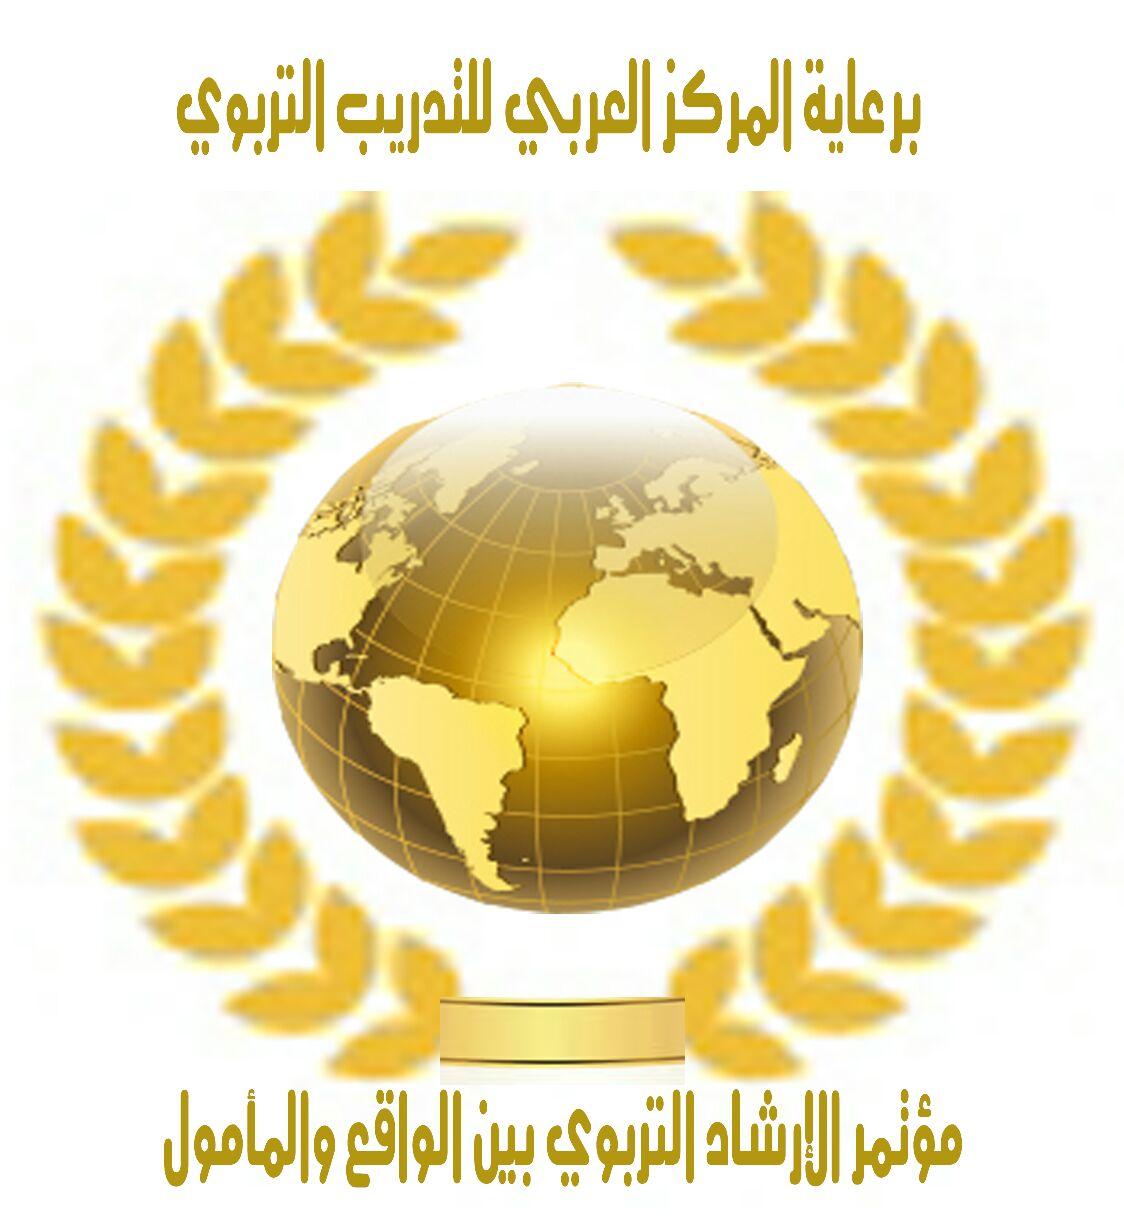 القاهرة تحتضن المؤتمر الدولي الأول للإرشاد التربوي .